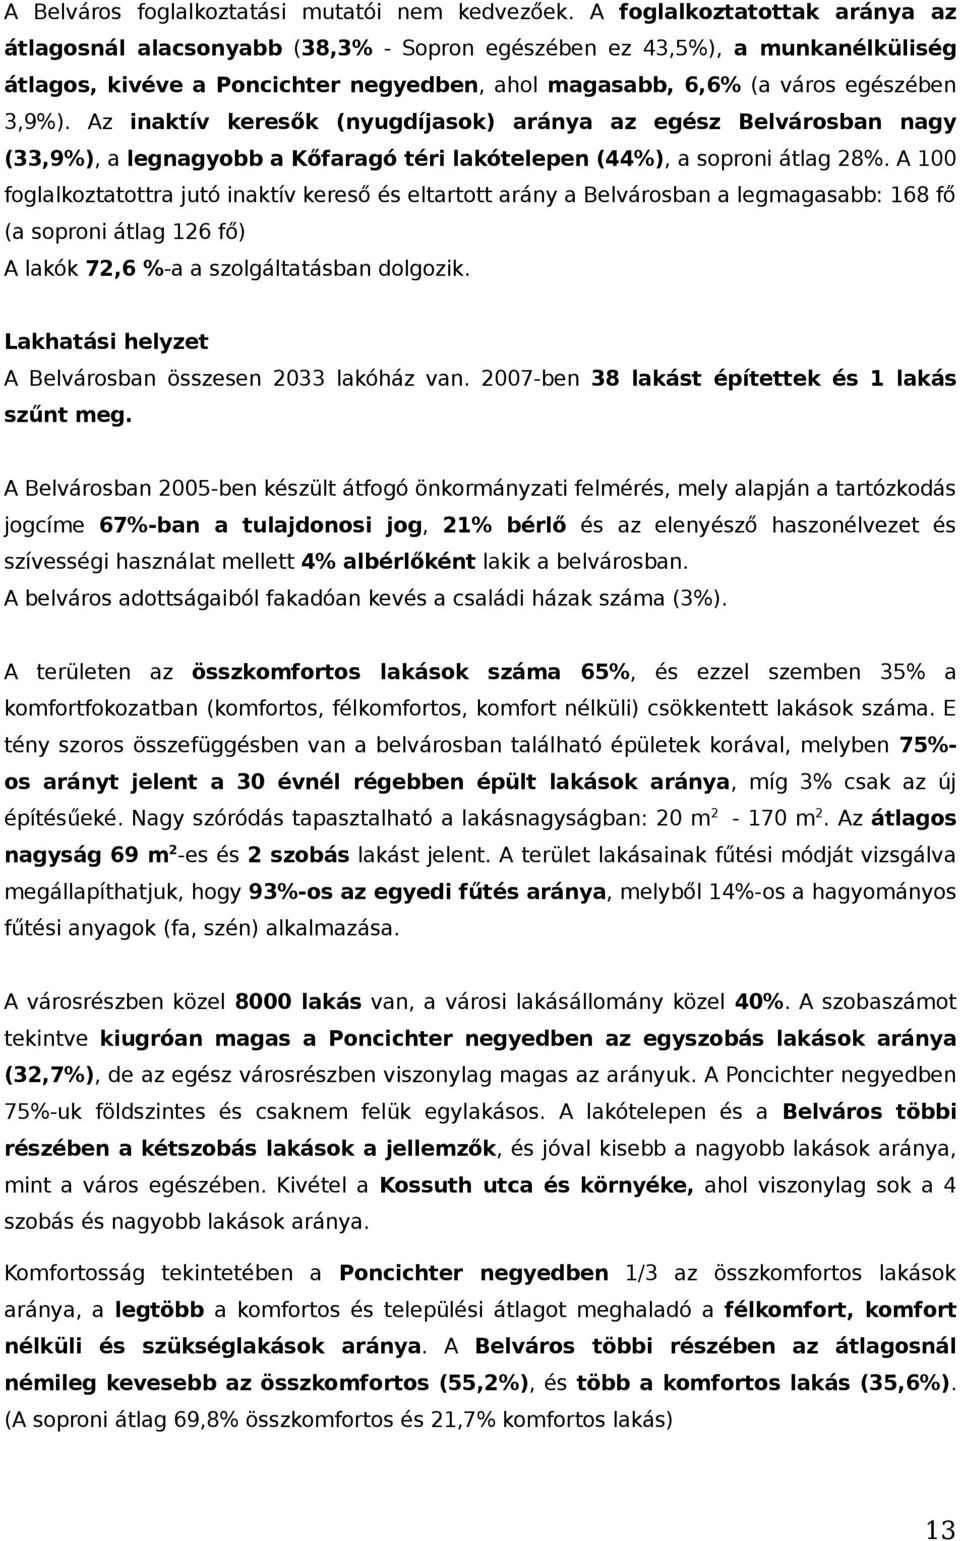 Az inaktív keresők (nyugdíjasok) aránya az egész Belvárosban nagy (33,9%), a legnagyobb a Kőfaragó téri lakótelepen (44%), a soproni átlag 28%.